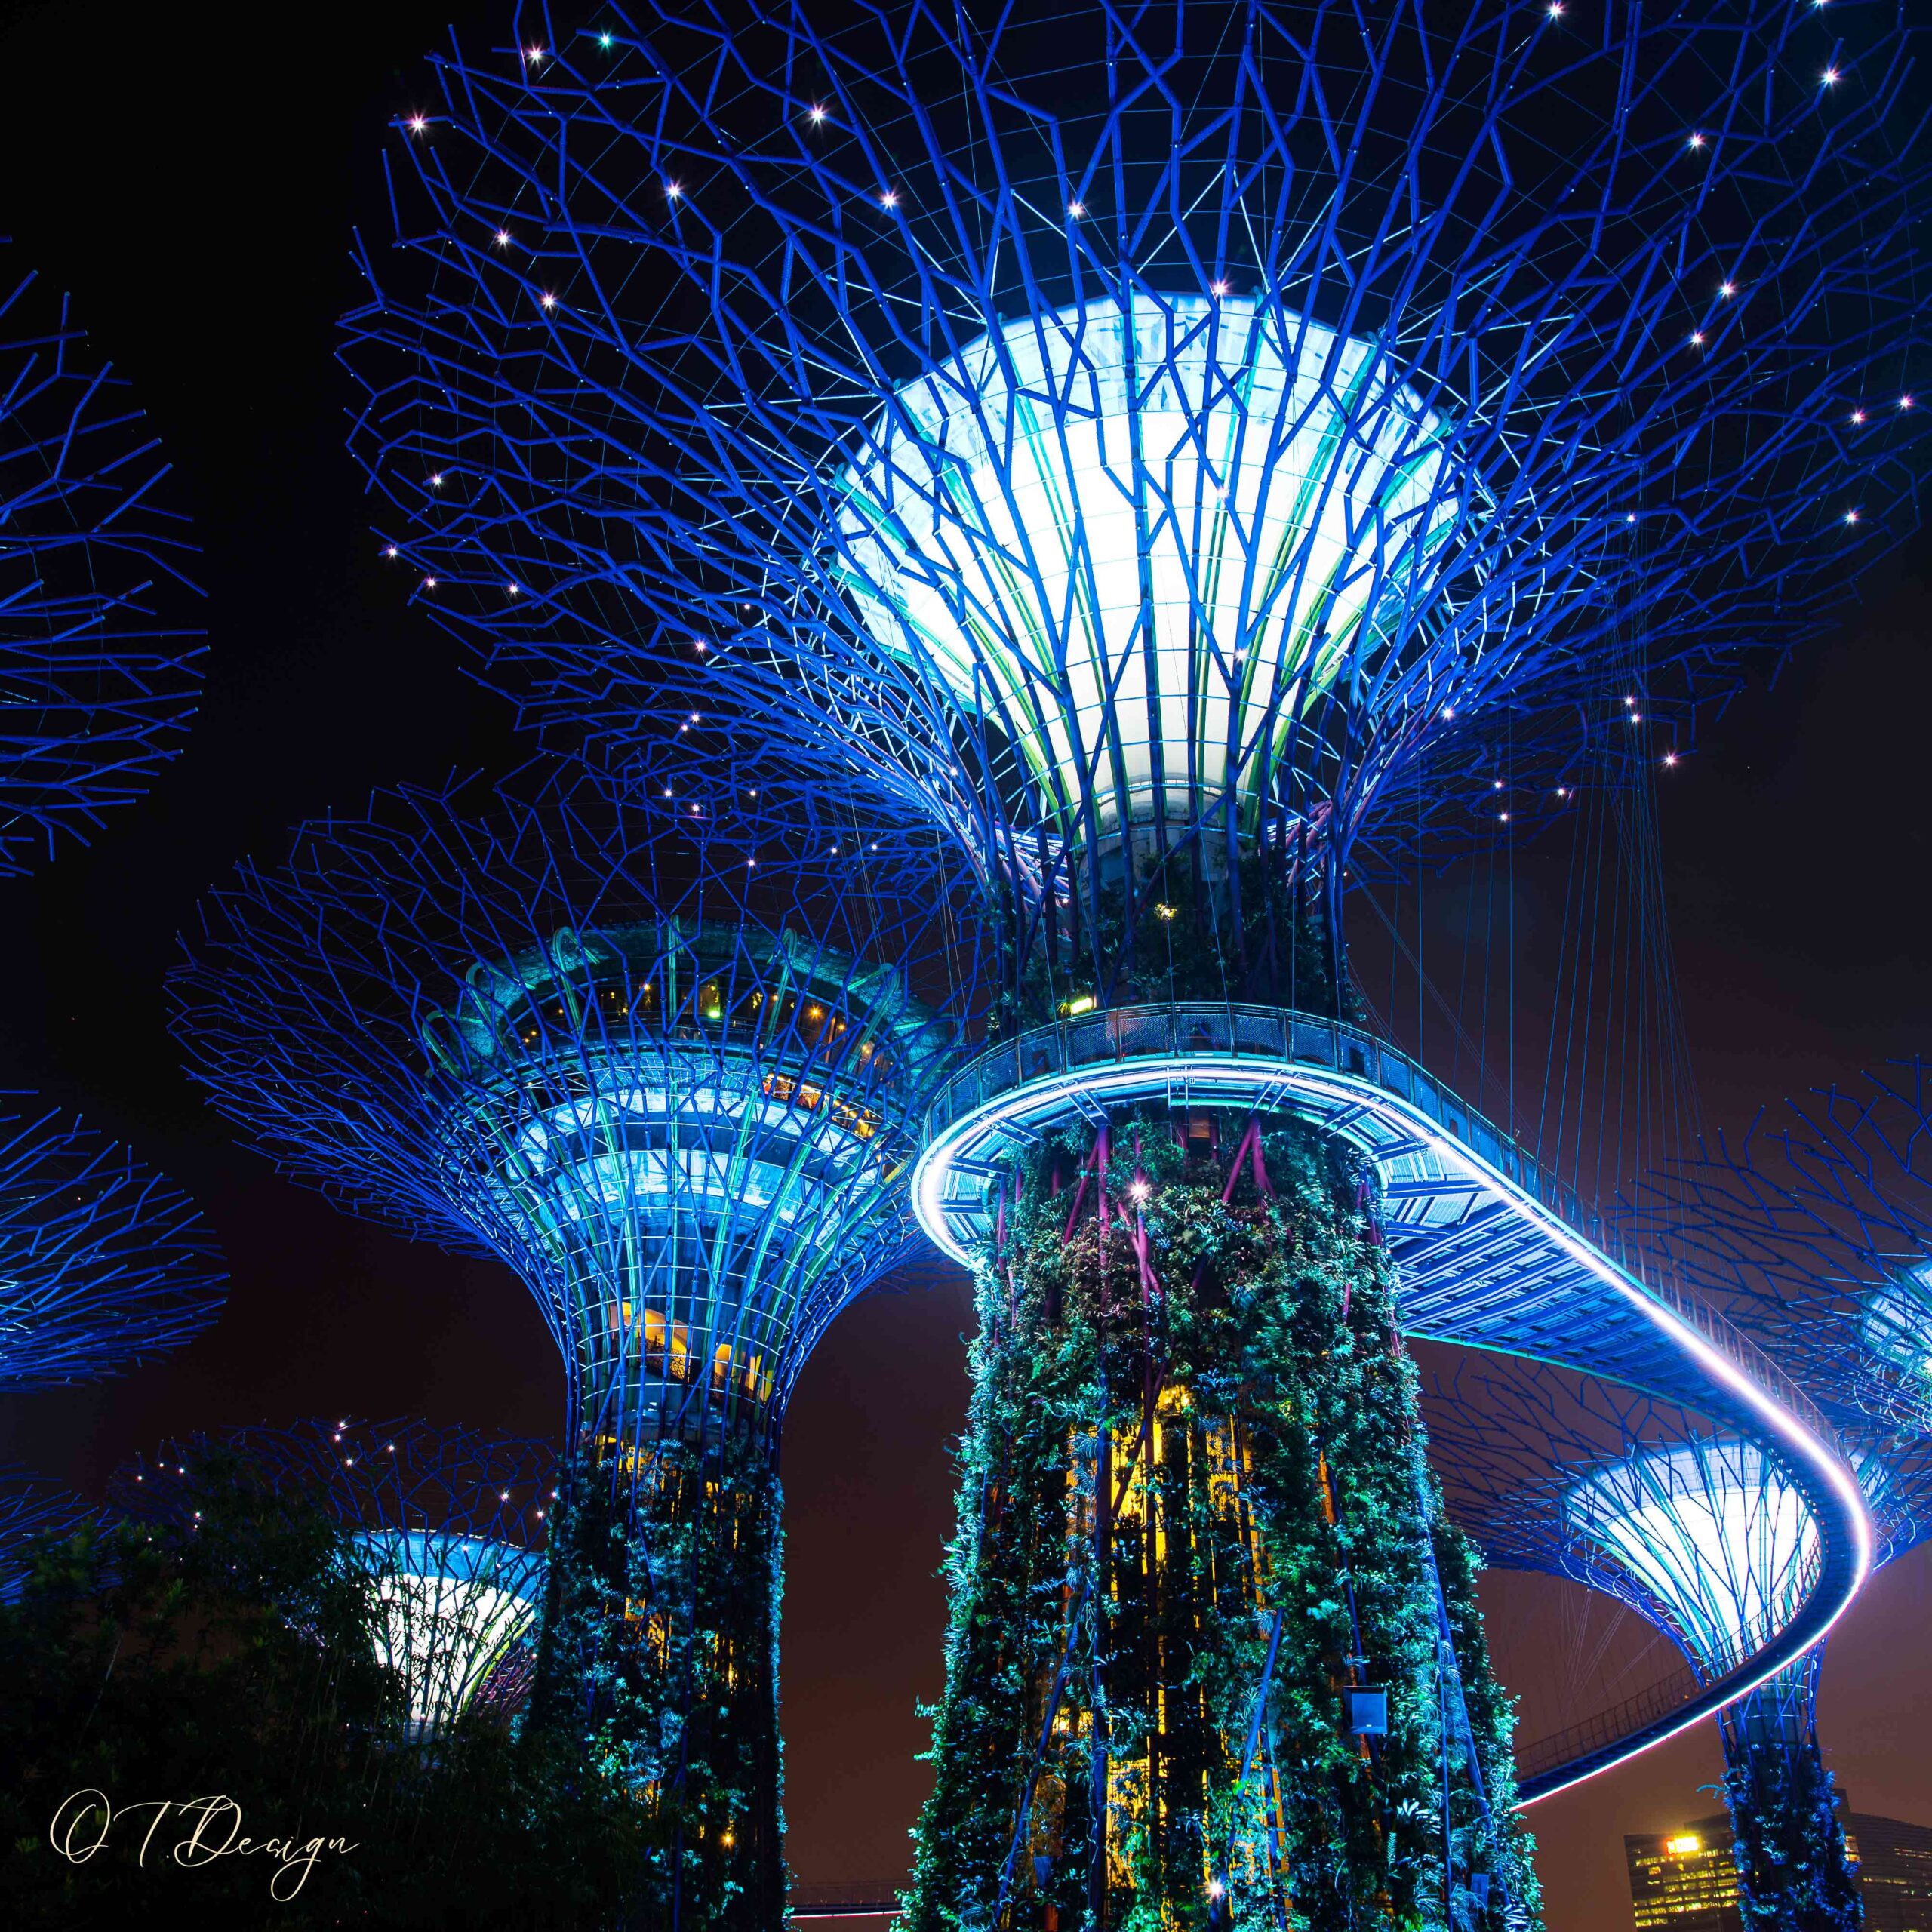 Botanic gardens' lights at night in Singapore